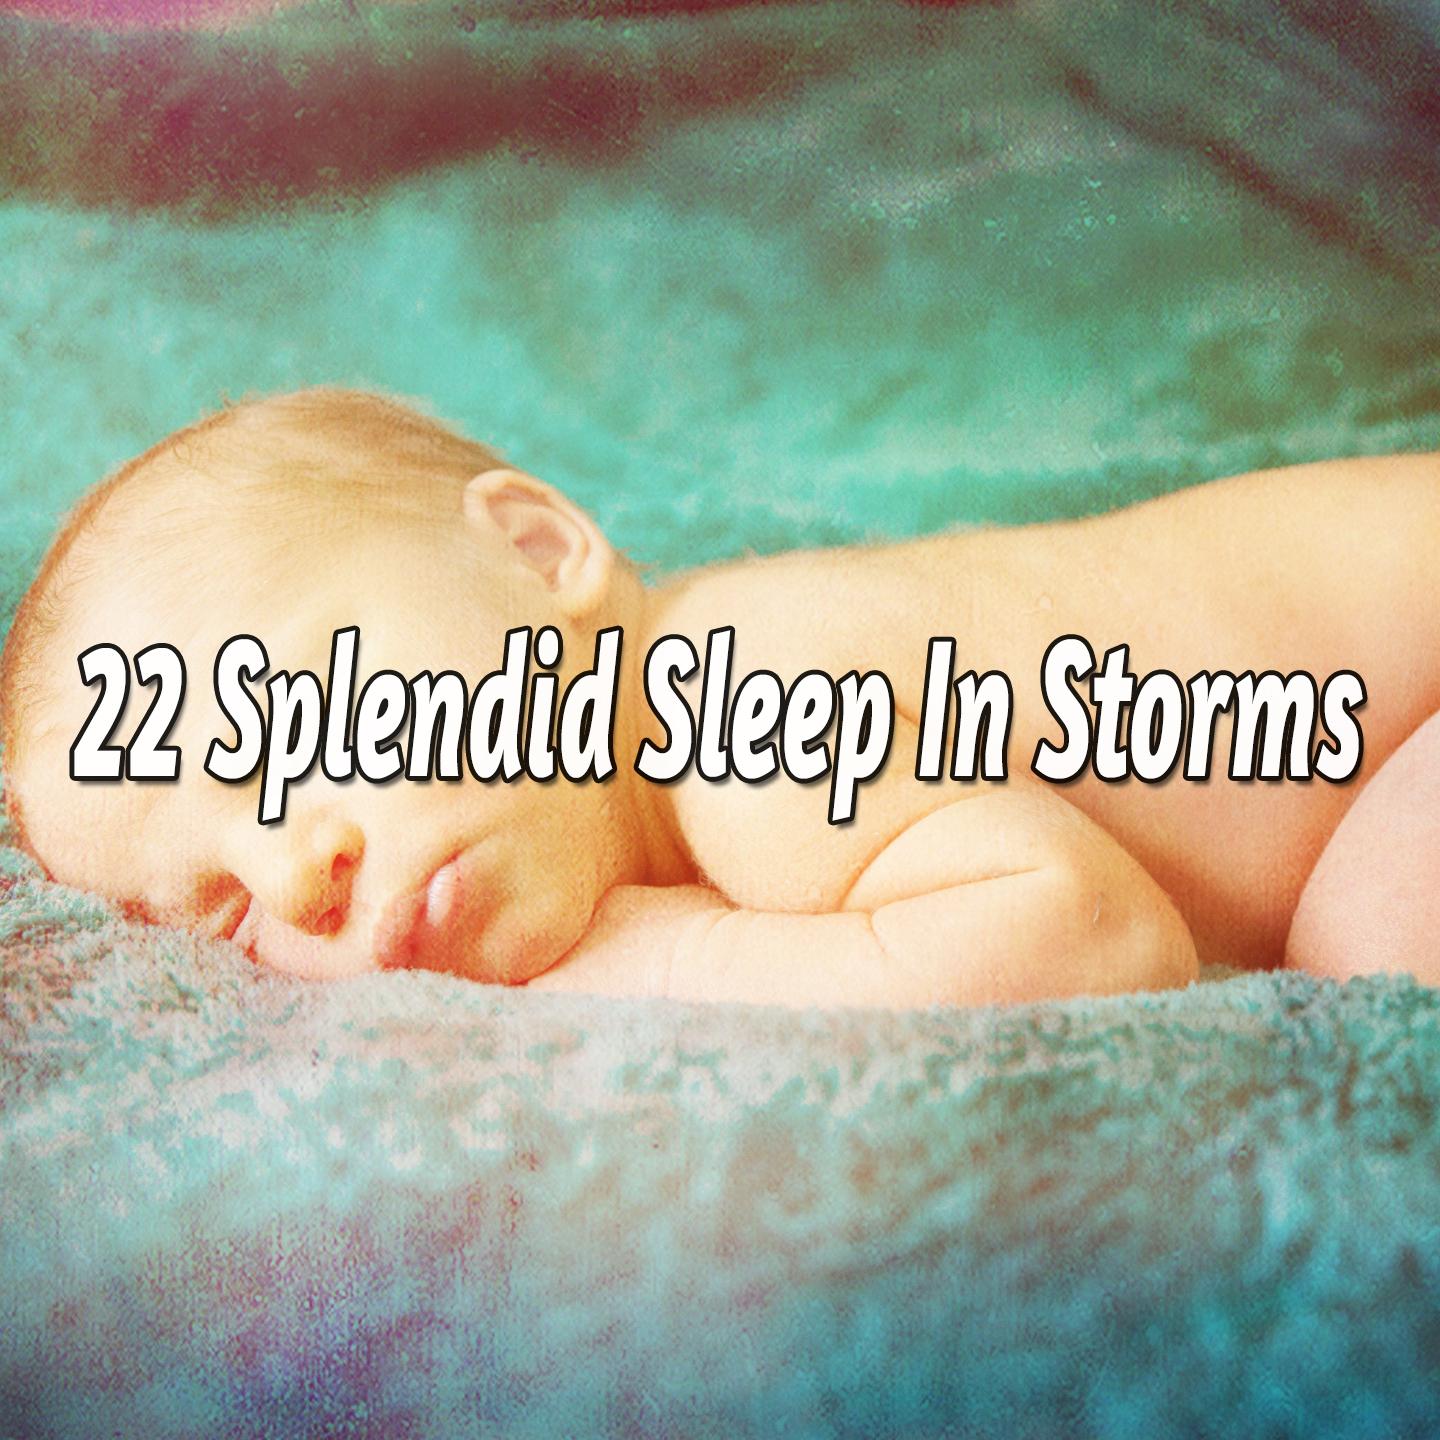 22 Splendid Sleep in Storms